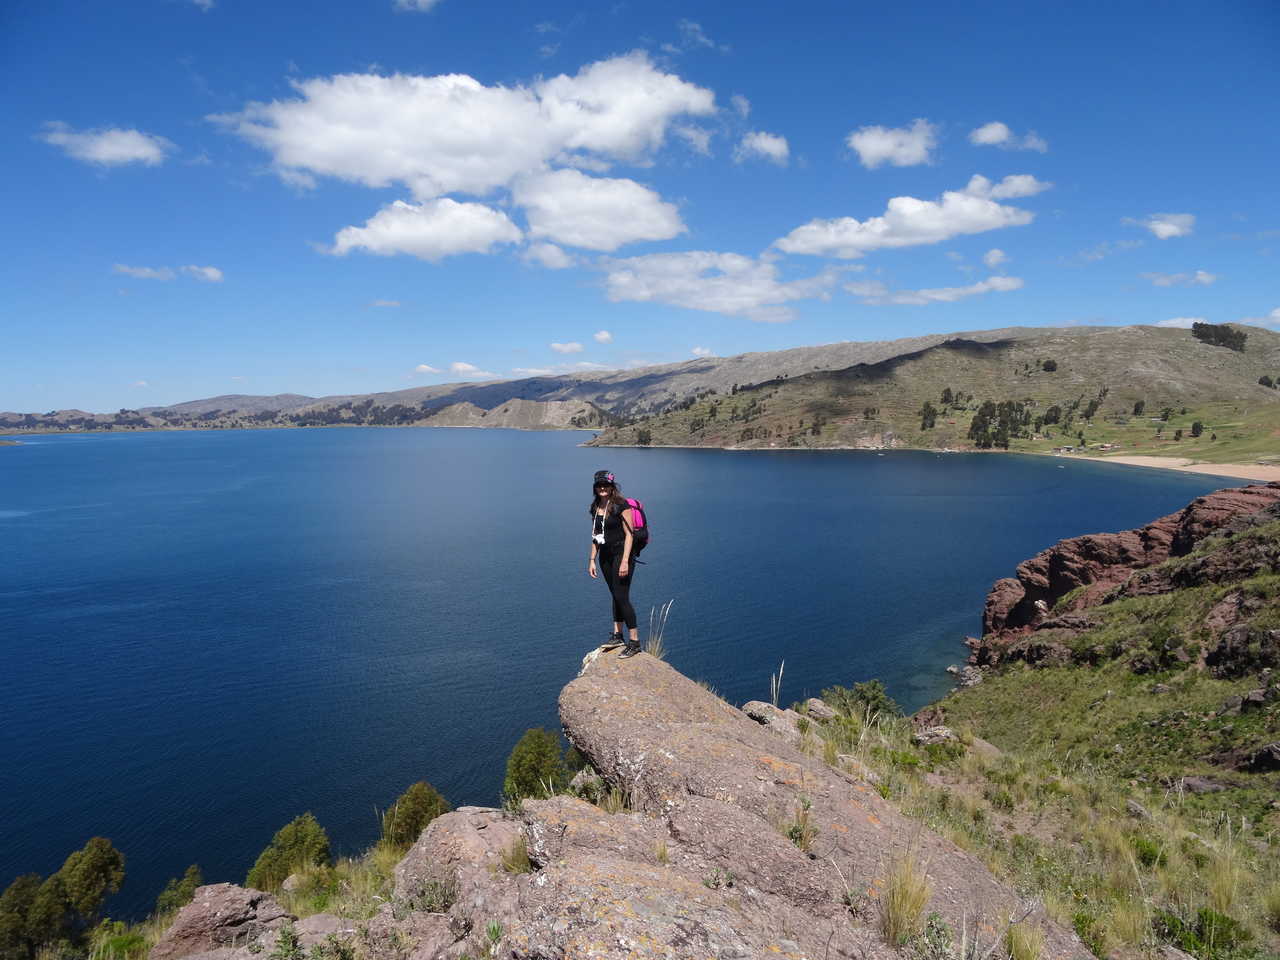 Randonneuse sur une pierre qui surplombe le lac Titicaca